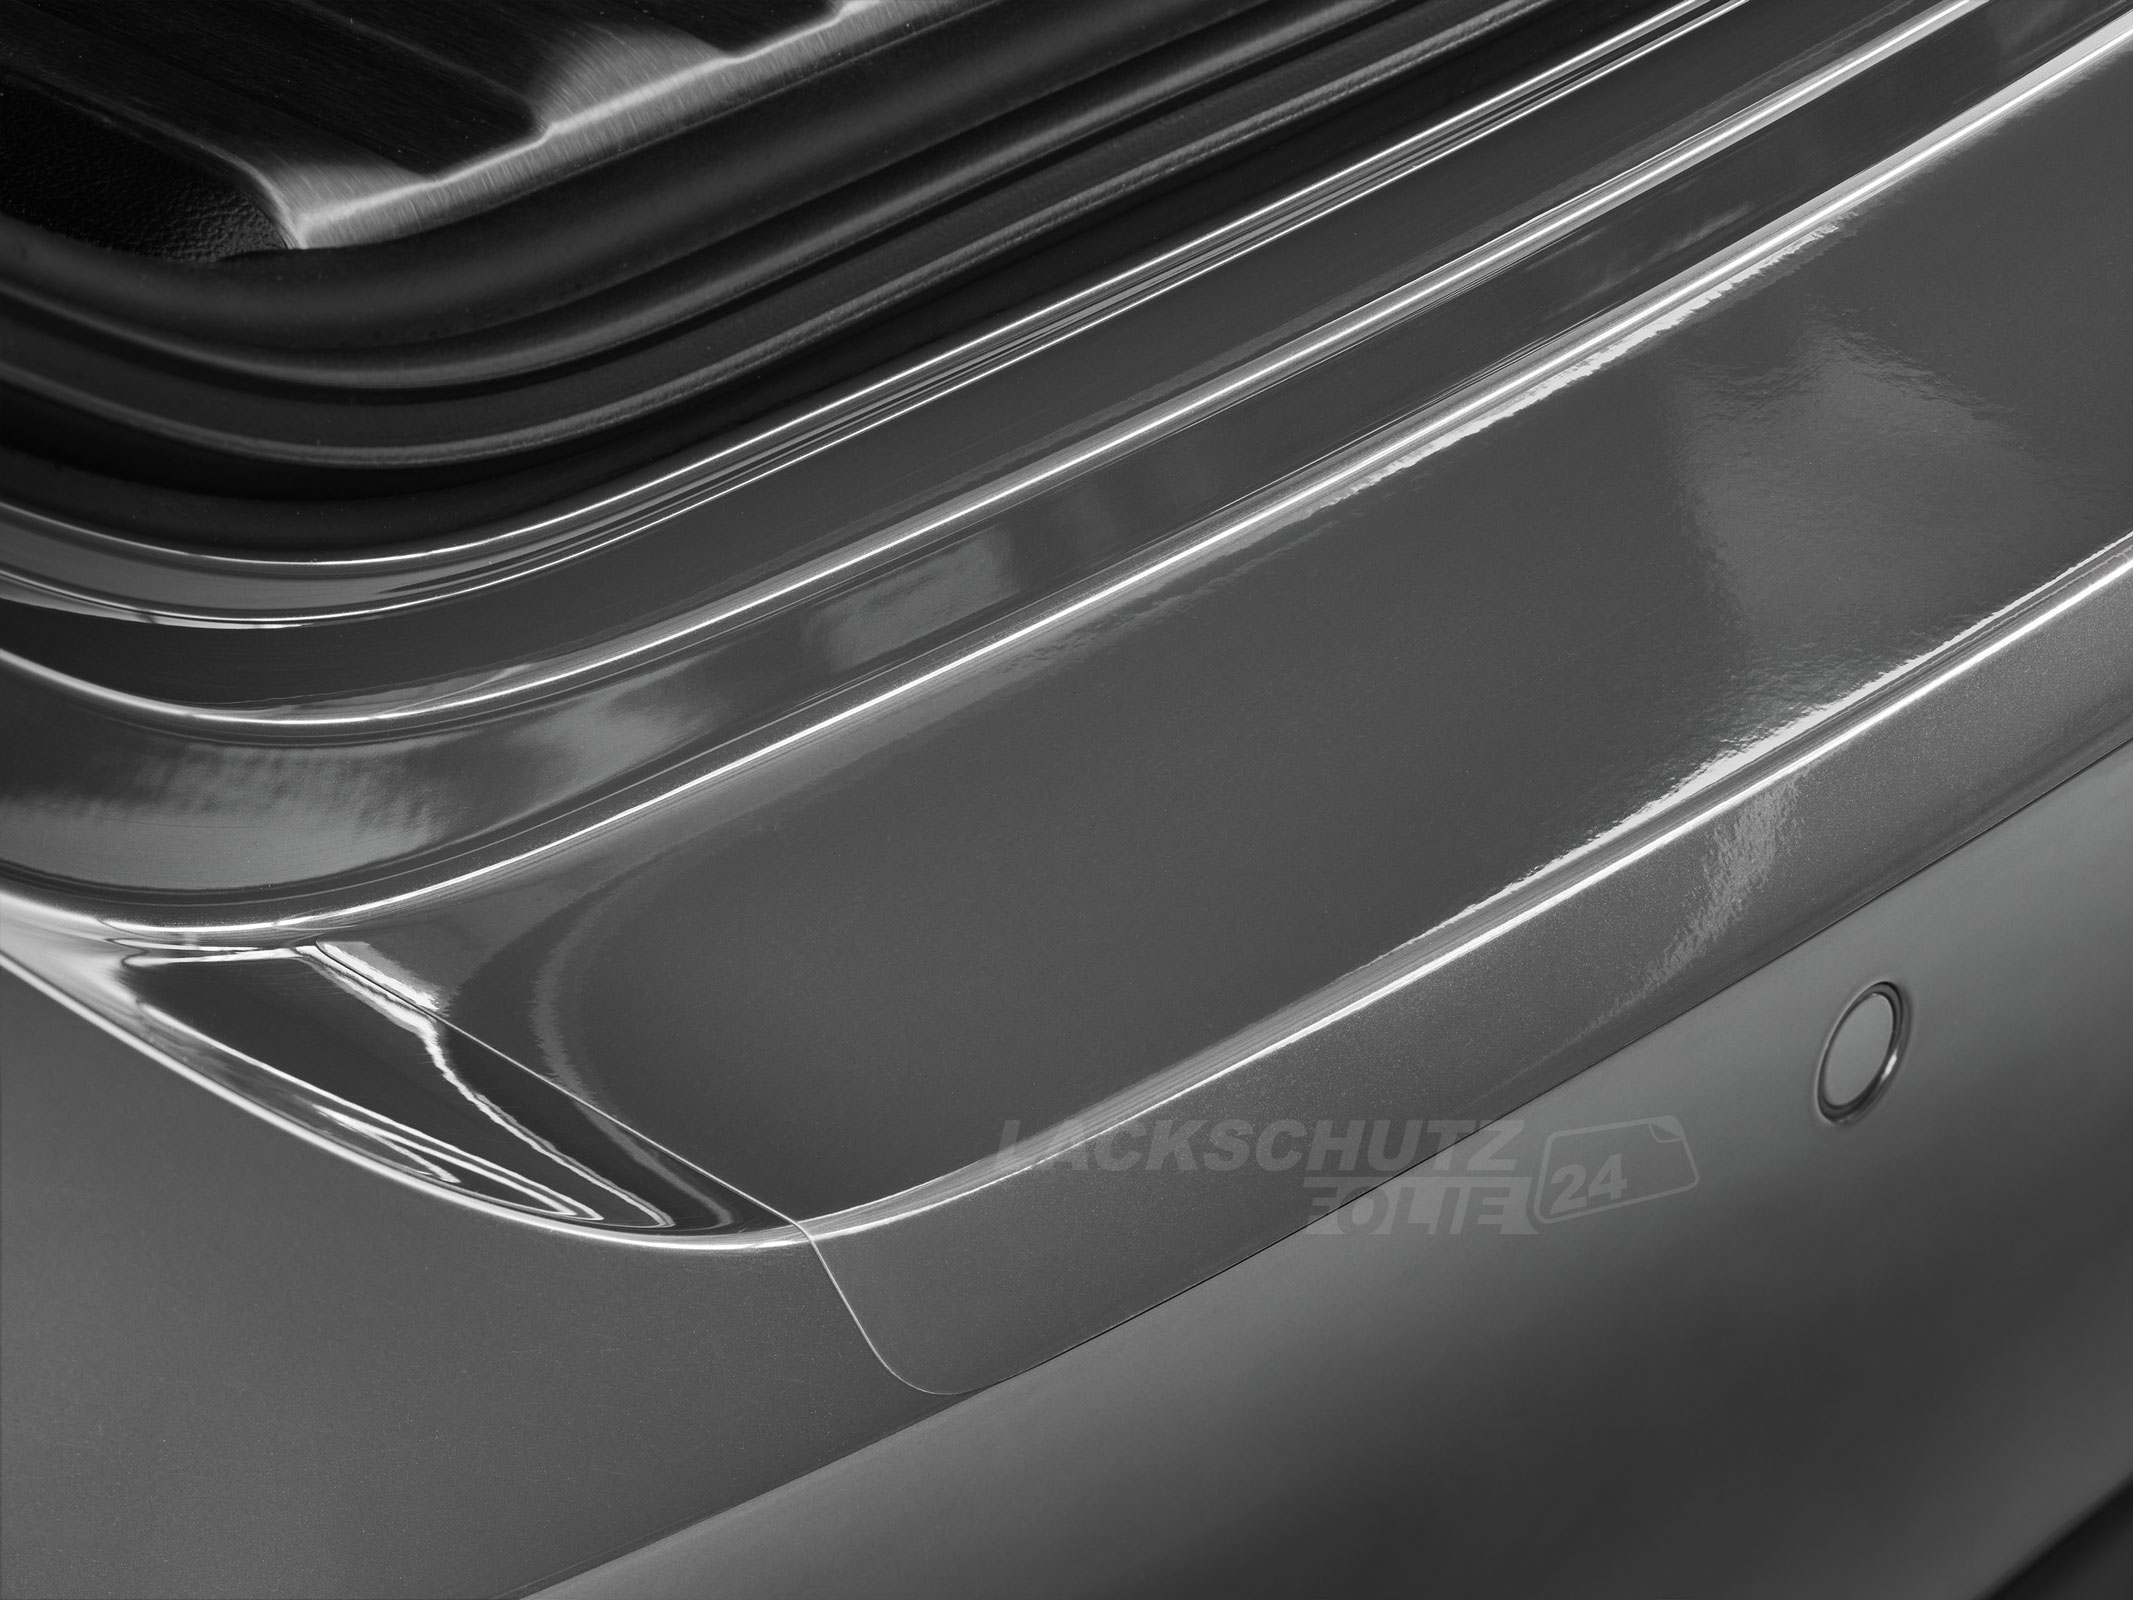 Ladekantenschutzfolie - Transparent Glatt Hochglänzend 150 µm stark für Audi A4 Avant (Kombi) B5, Typ 8D, BJ 1996-1999